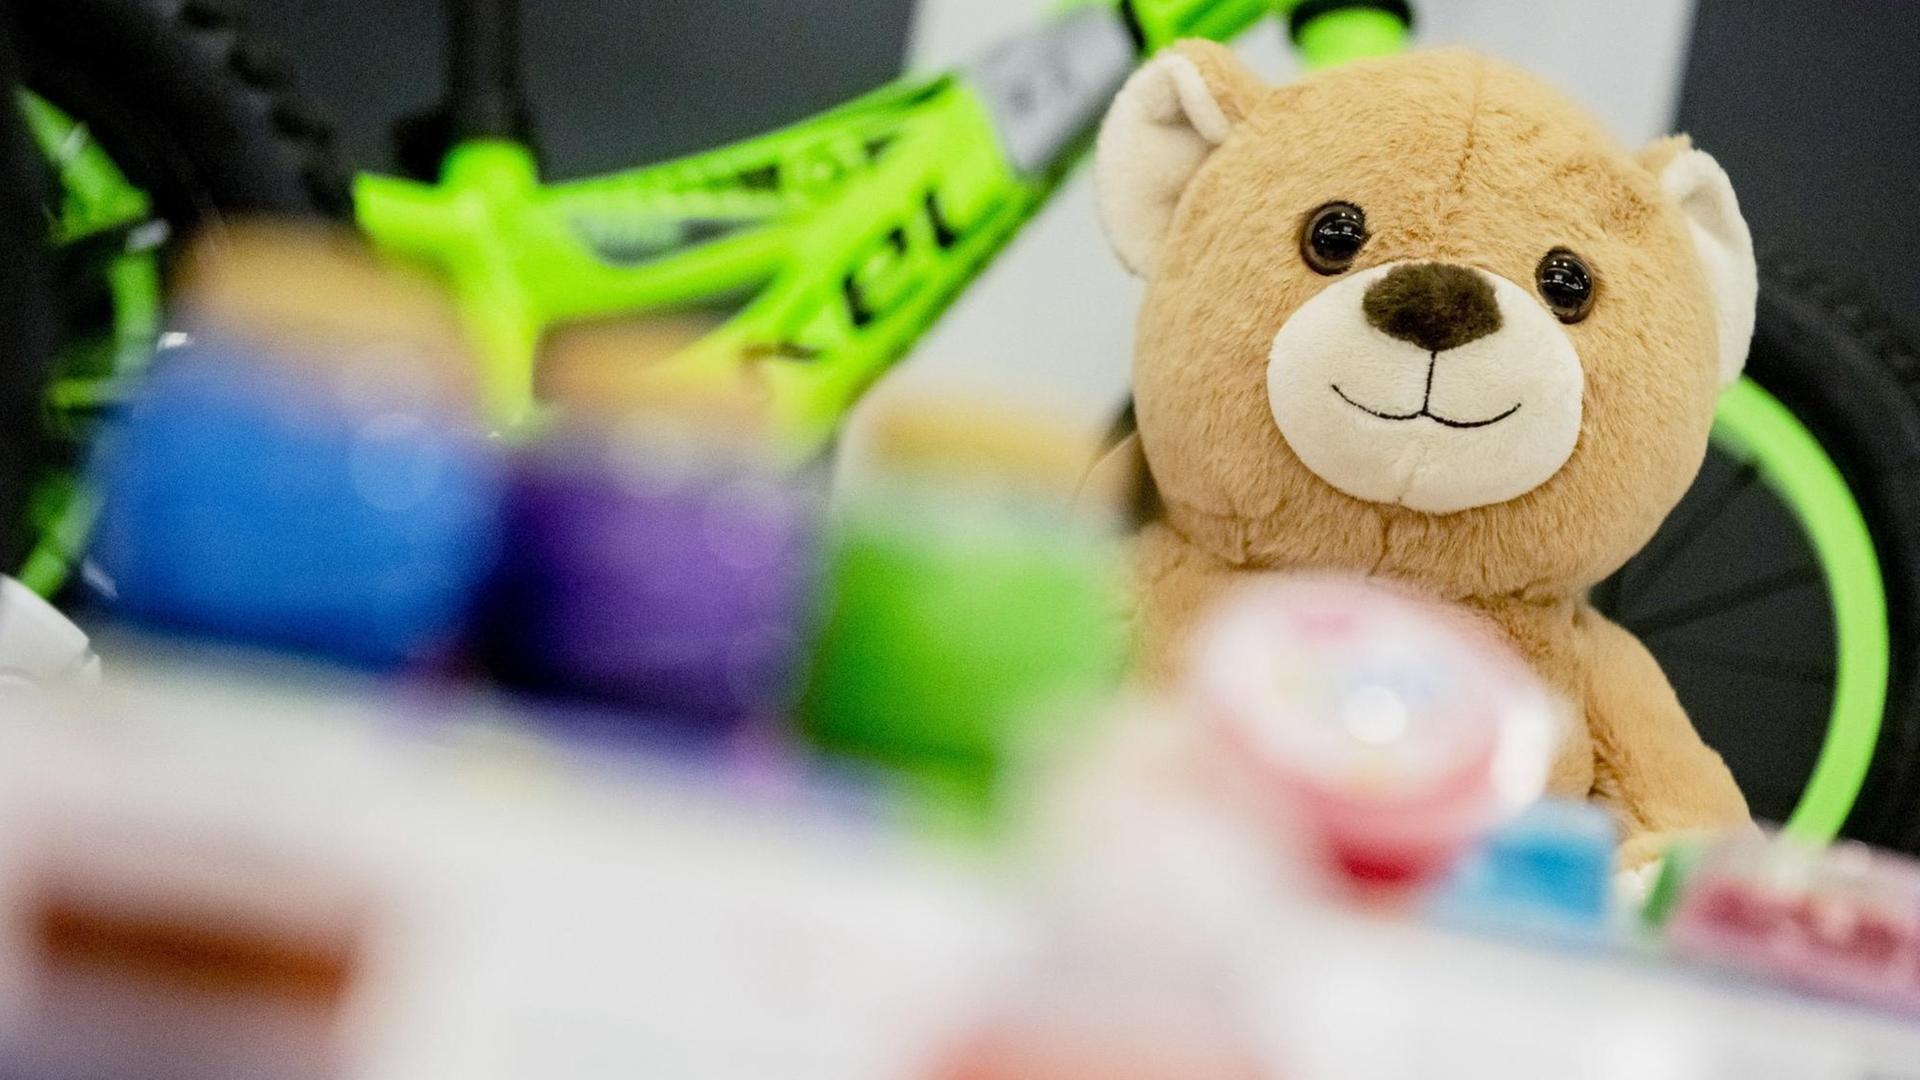 Ein vernetzter Teddybär "Toy-Fi Teddy" liegt vor einer Pressekonferenz der Stiftung Warentest zur "Sicherheit von Kinderprodukten" auf einem Tisch. Die Stiftung Warentest prüfte vernetzte Spielzeuge.